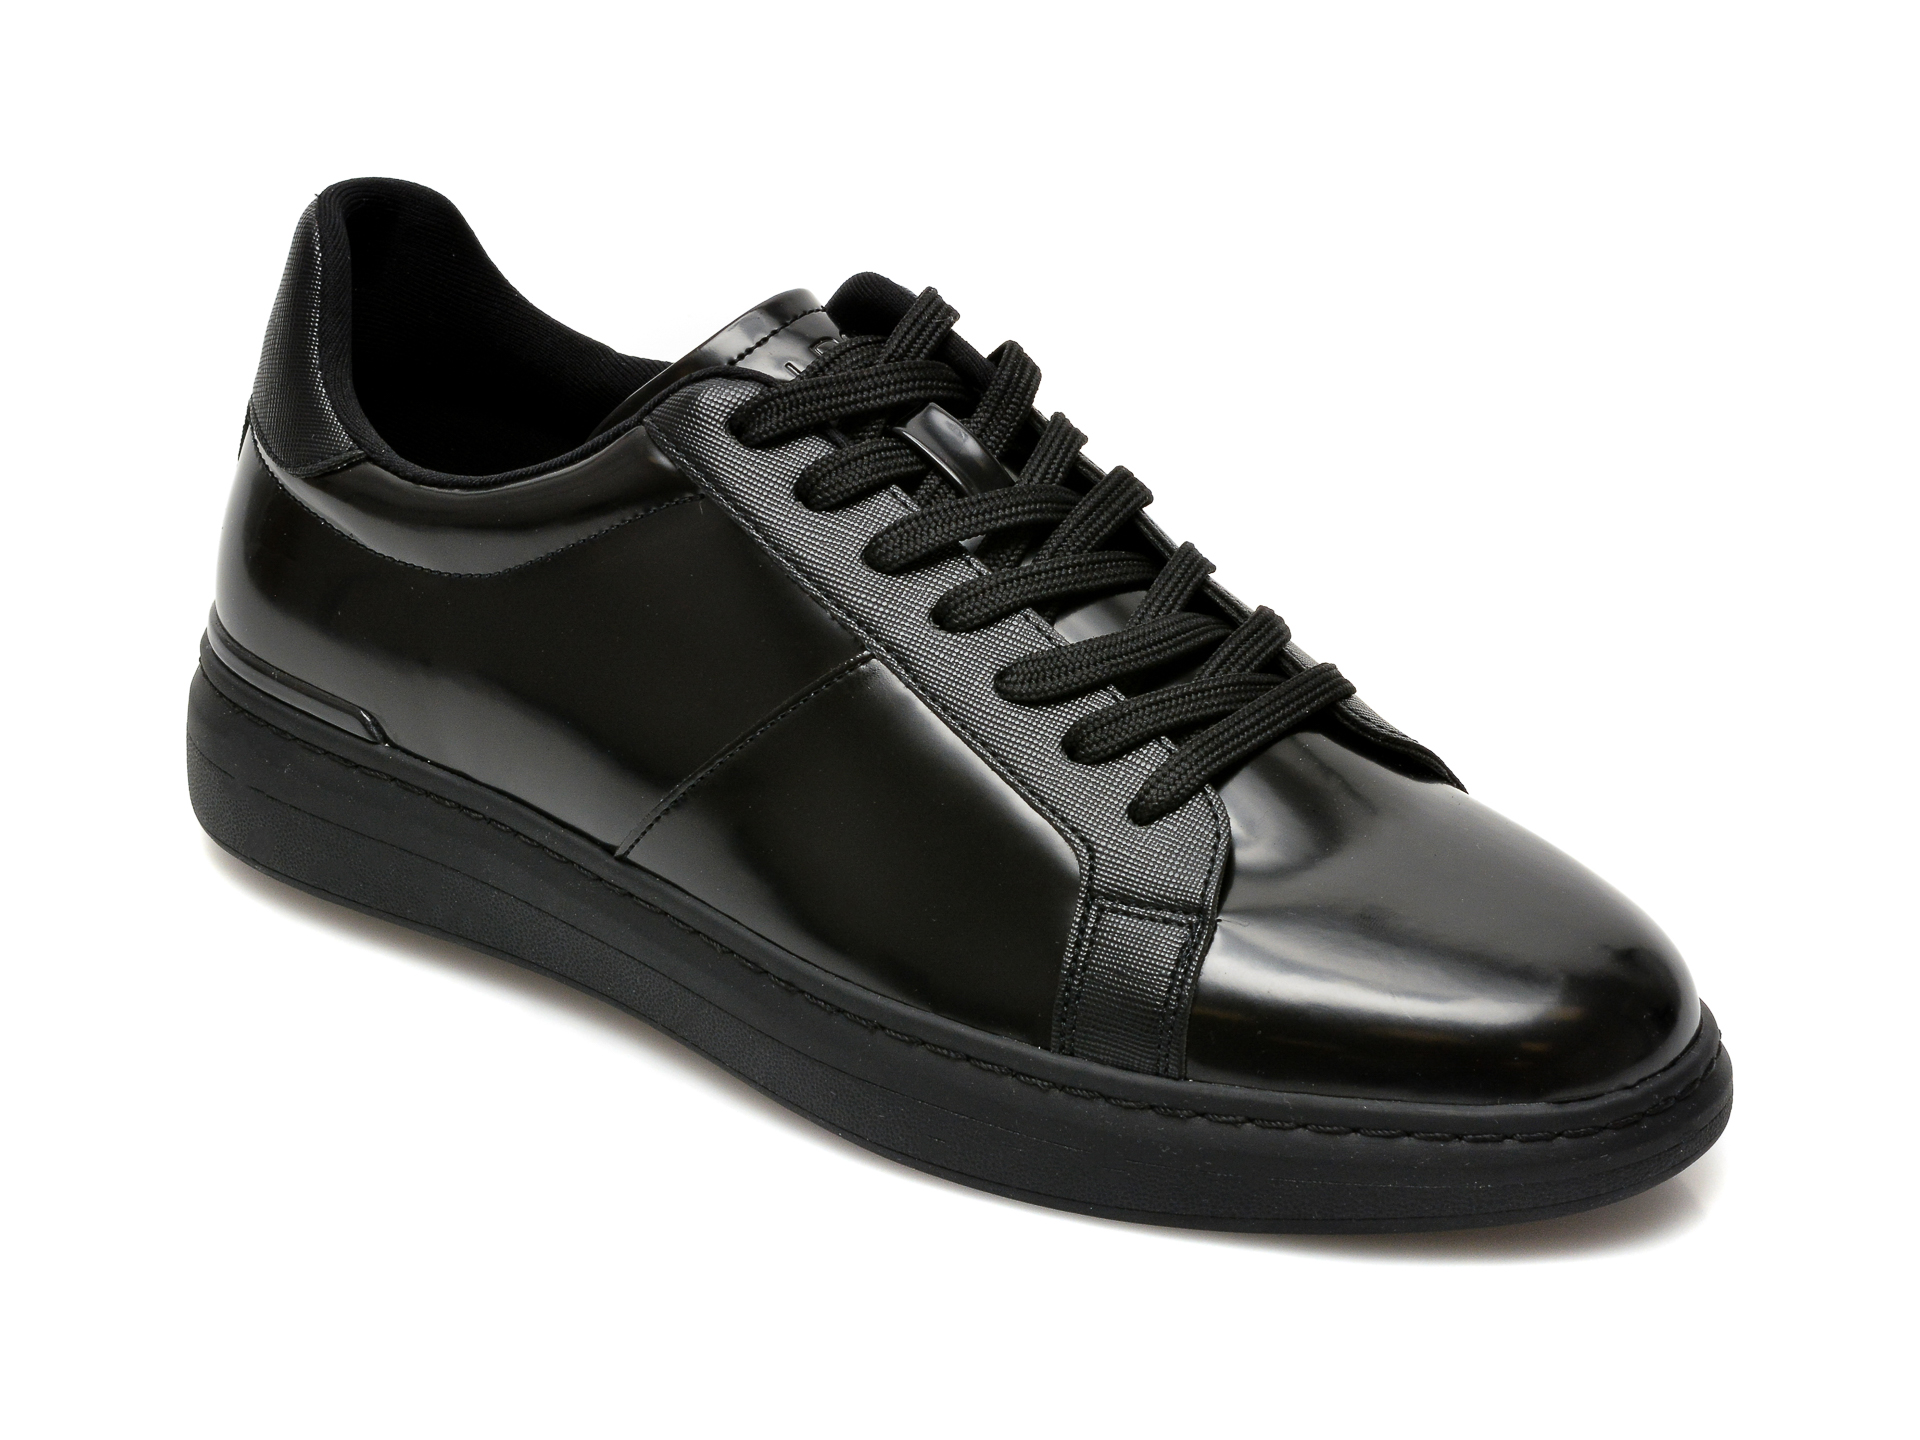 Pantofi ALDO negri, Tosien001, din piele ecologica Aldo imagine reduceri